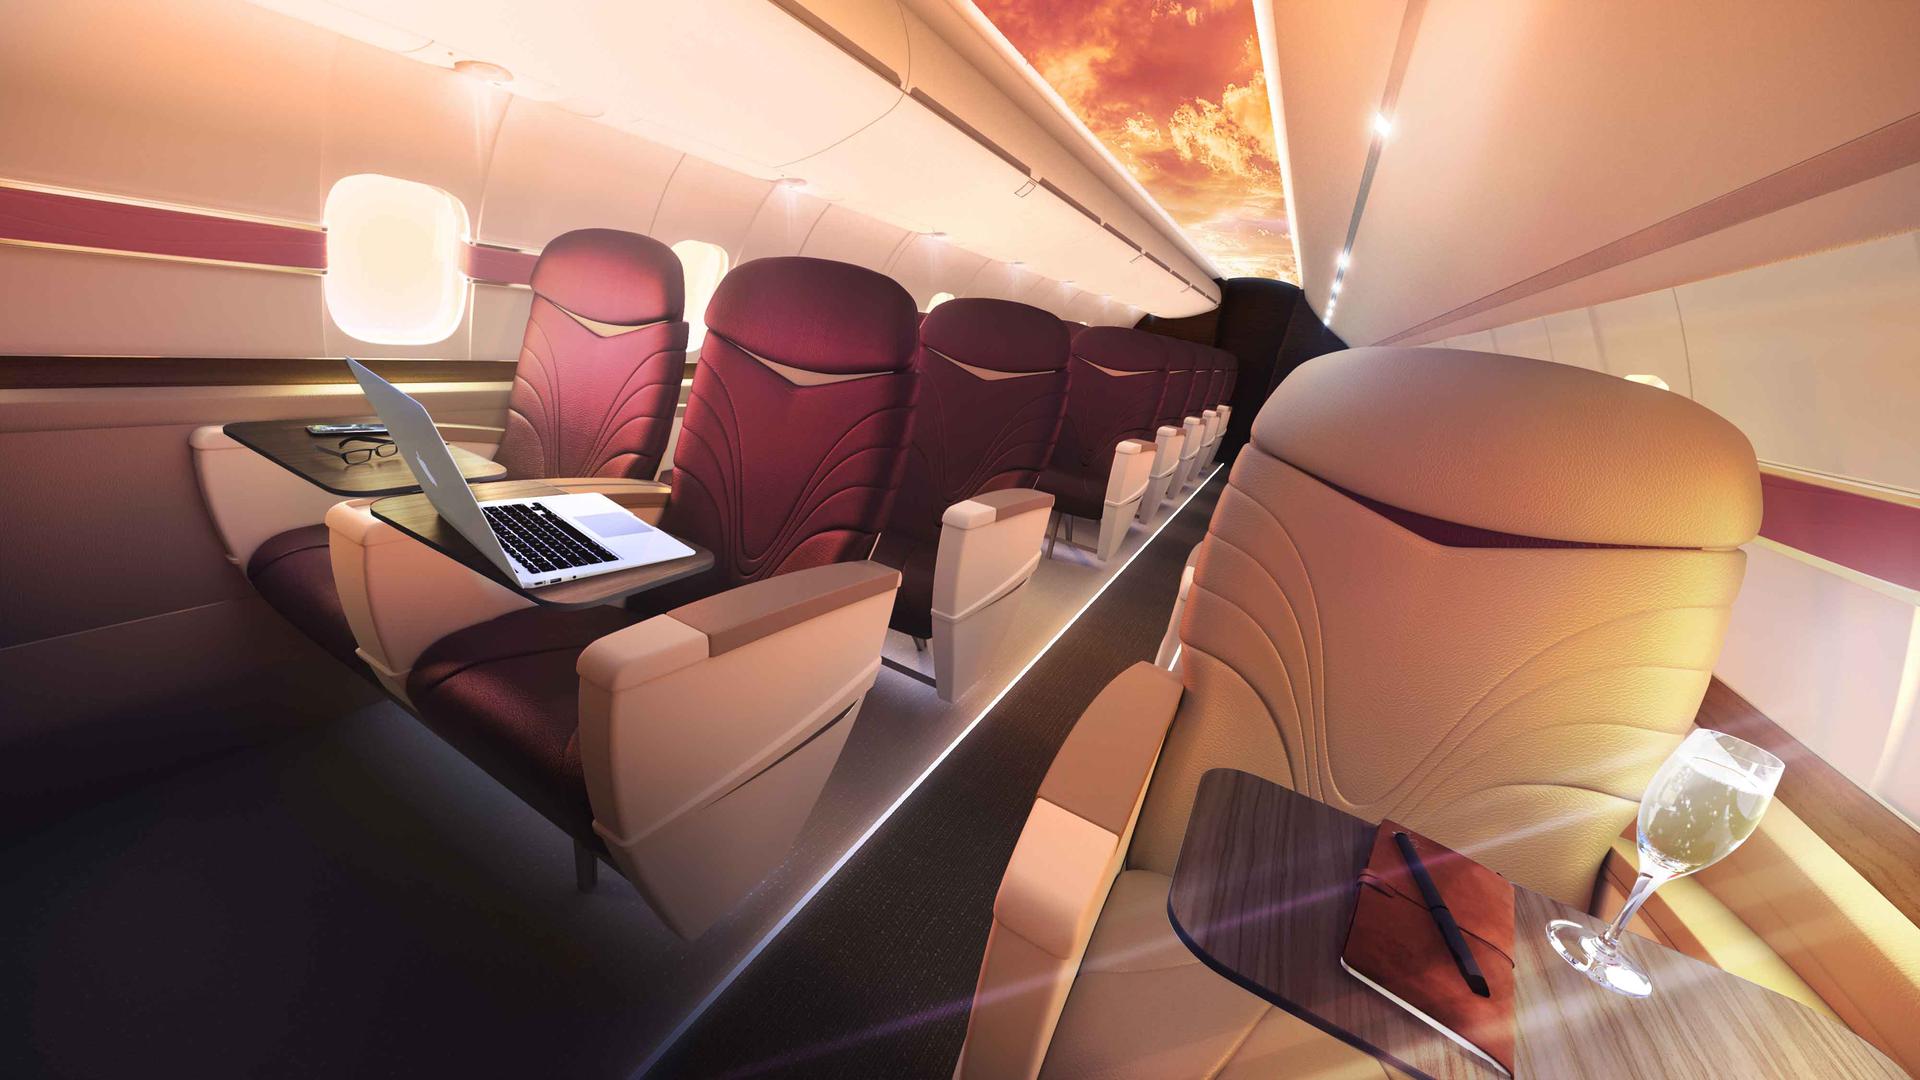 Njegovi zrakoplovi imaju 29 sjedala, od čega je osam u za one koji će doživjeti posebnu dozu luksuza. Prvi razred ima 21 sjedalo, a Wave razred osam sjedala i nudi posebnu dozu luksuza tijekom leta. Svim putnicima tijekom leta bit će omogućeno besplatan pristup brzom WiFi-u, korištenje iPada, HD ekrana, uživanje u virtualnoj stvarnosti i birana jela.  